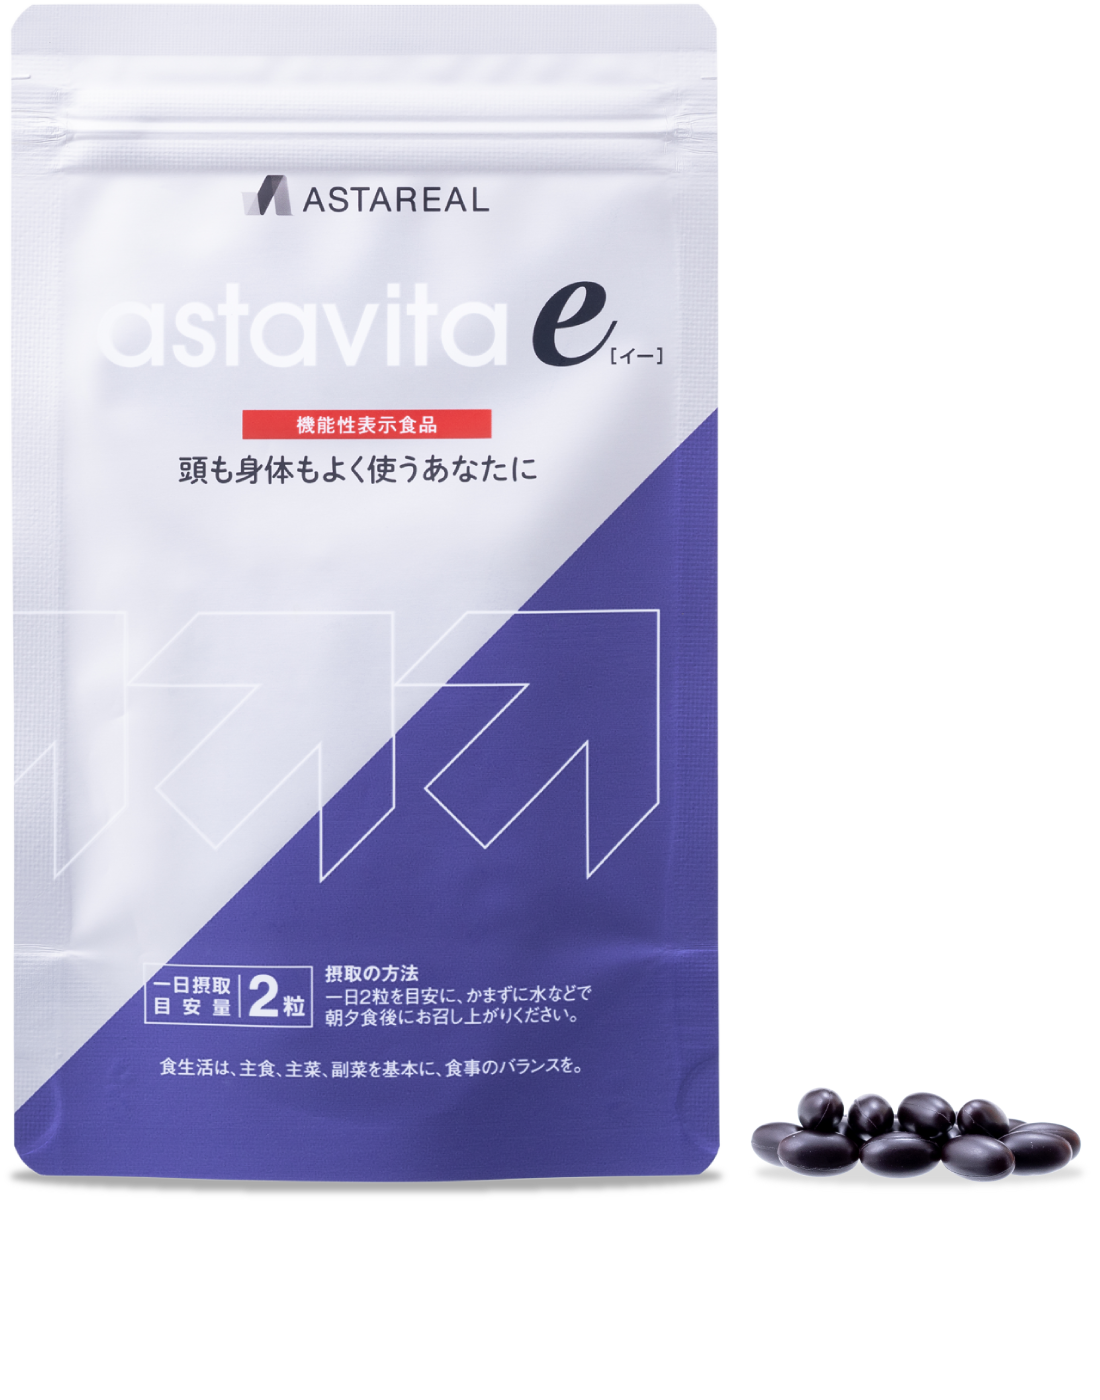 アスタビータ e  頭も身体もよく使うあなたにおすすめのアスタキサンチン12mgのサプリメント  アスタリール公式通販サイトASTAREAL